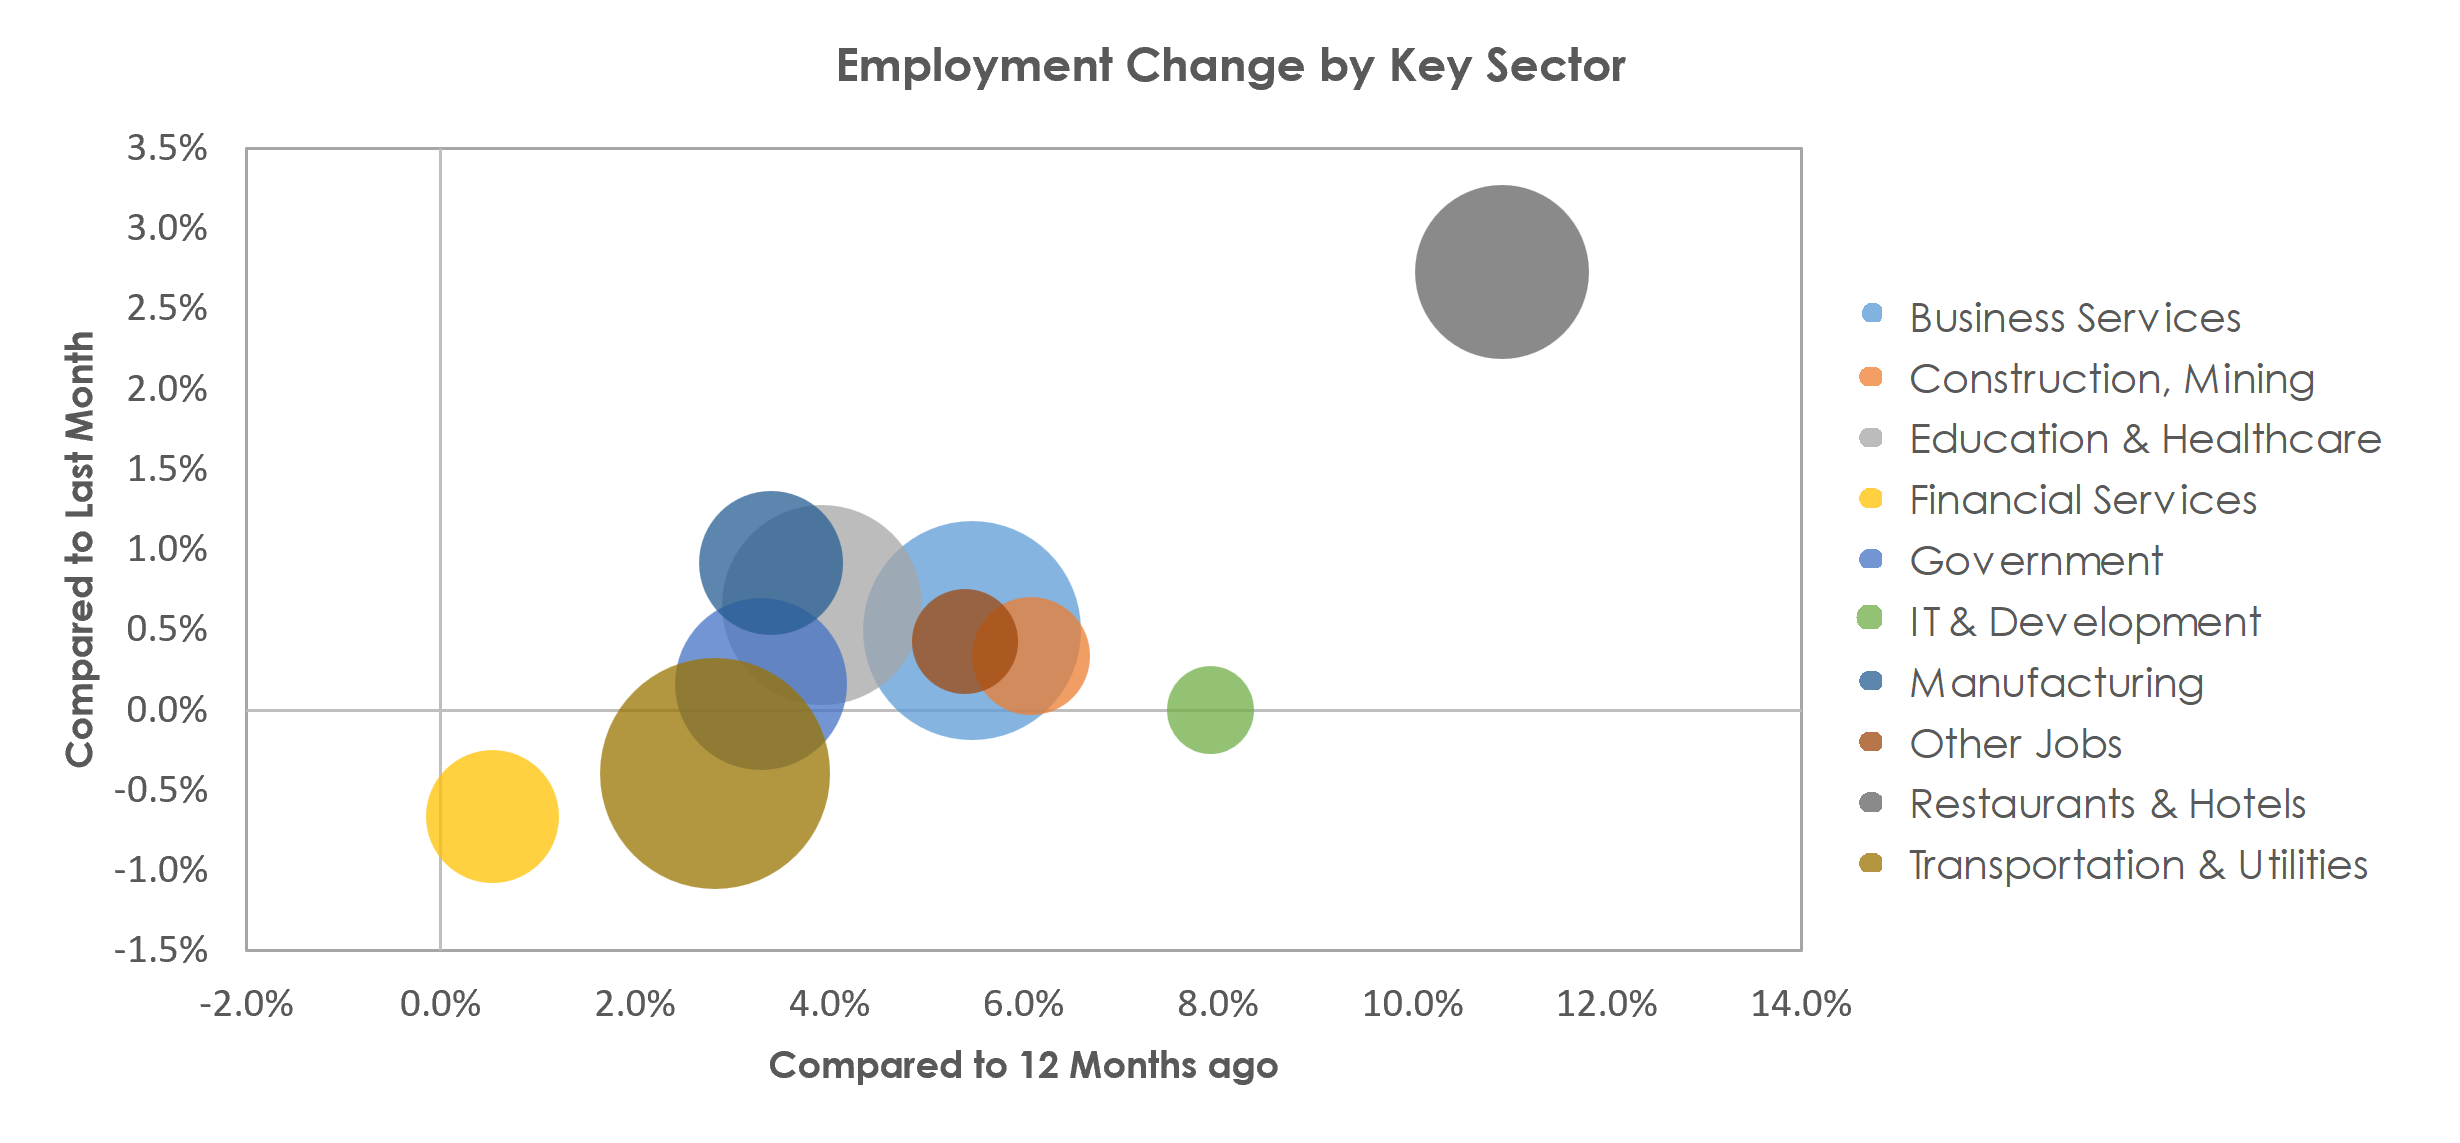 Nashville-Davidson--Murfreesboro--Franklin, TN Unemployment by Industry March 2023